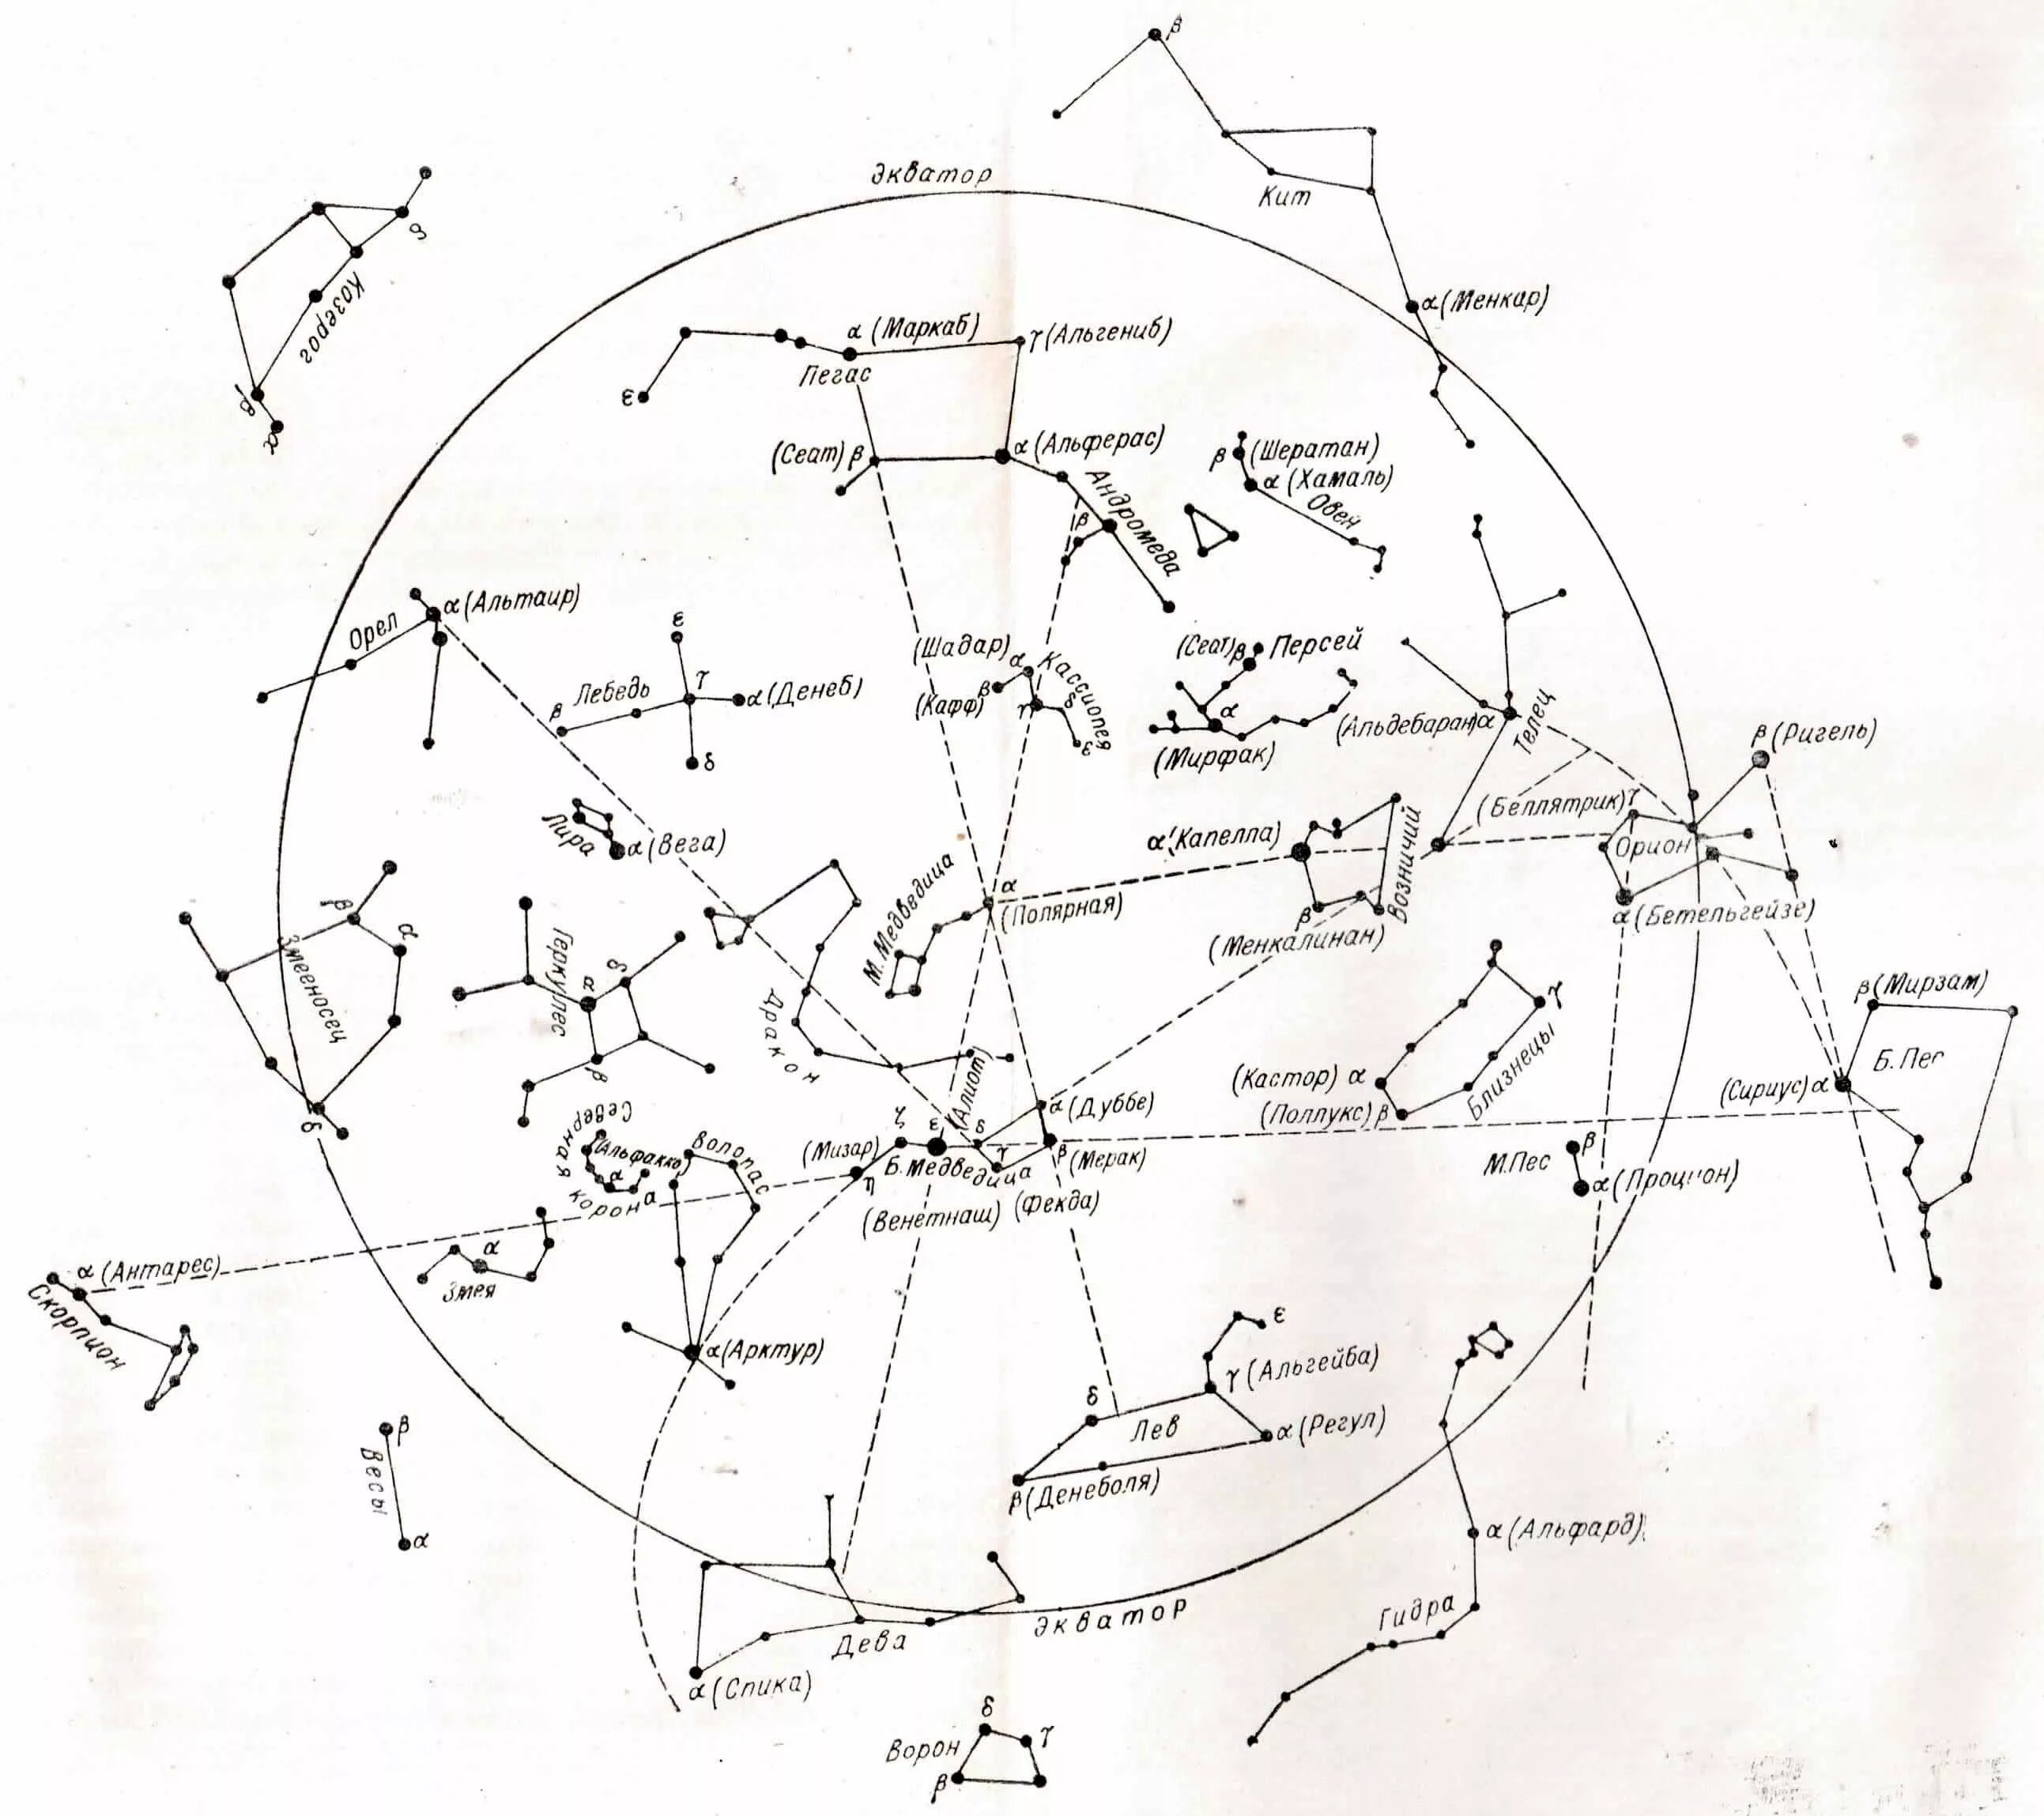 Созвездие жертвенник на карте звездного неба. Карта звездного неба с названиями звезд Северного полушария. Звездная карта созвездия. Сириус на карте звездного неба Северного полушария. Найденные карты звездного неба